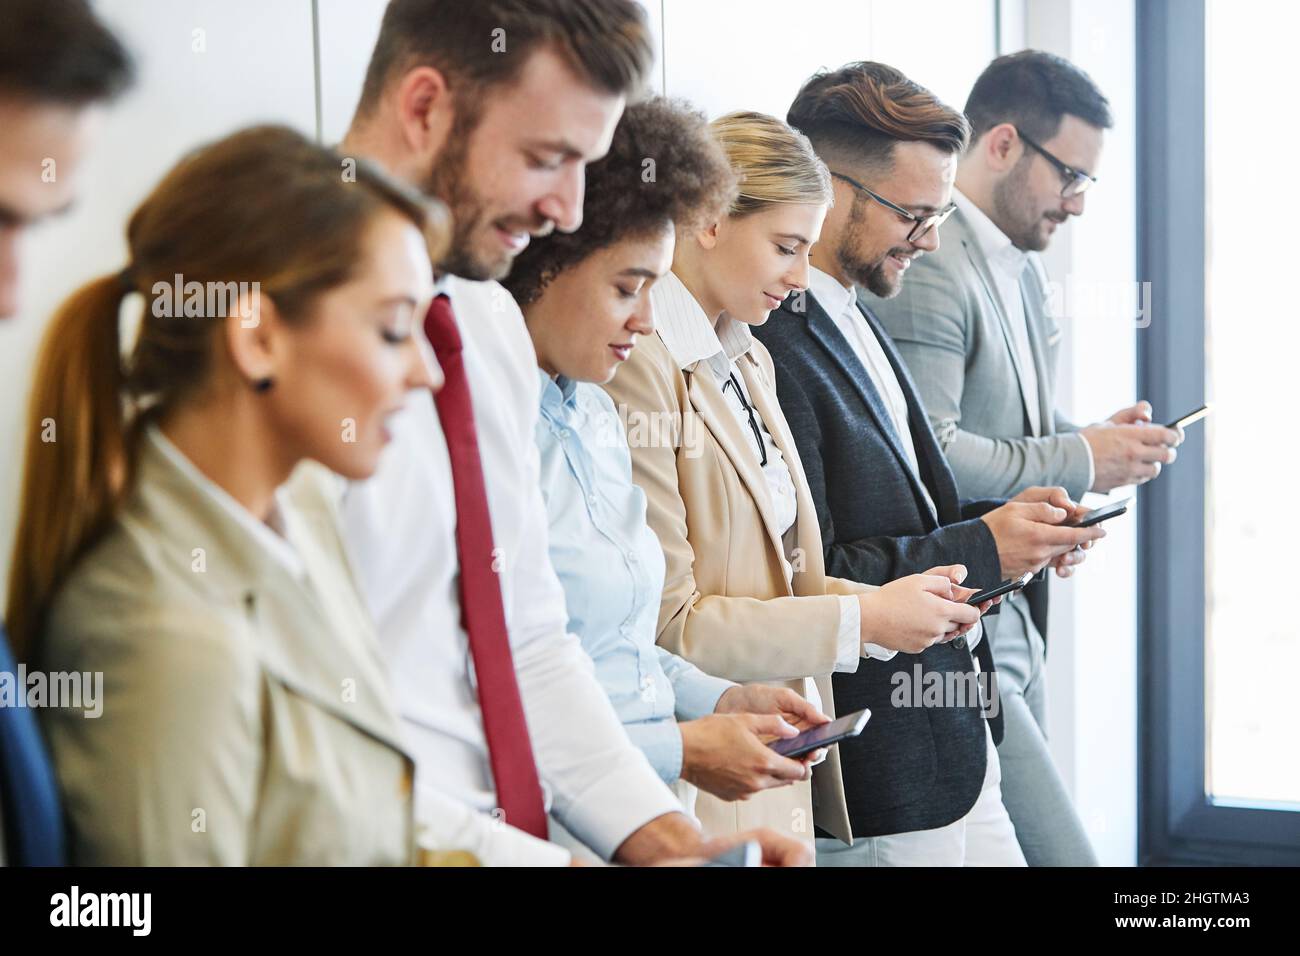 Junge Geschäftsleute arbeiten mit einem Mobiltelefon, einem Smartphone oder einem Social-Media-Gerät zusammen Stockfoto